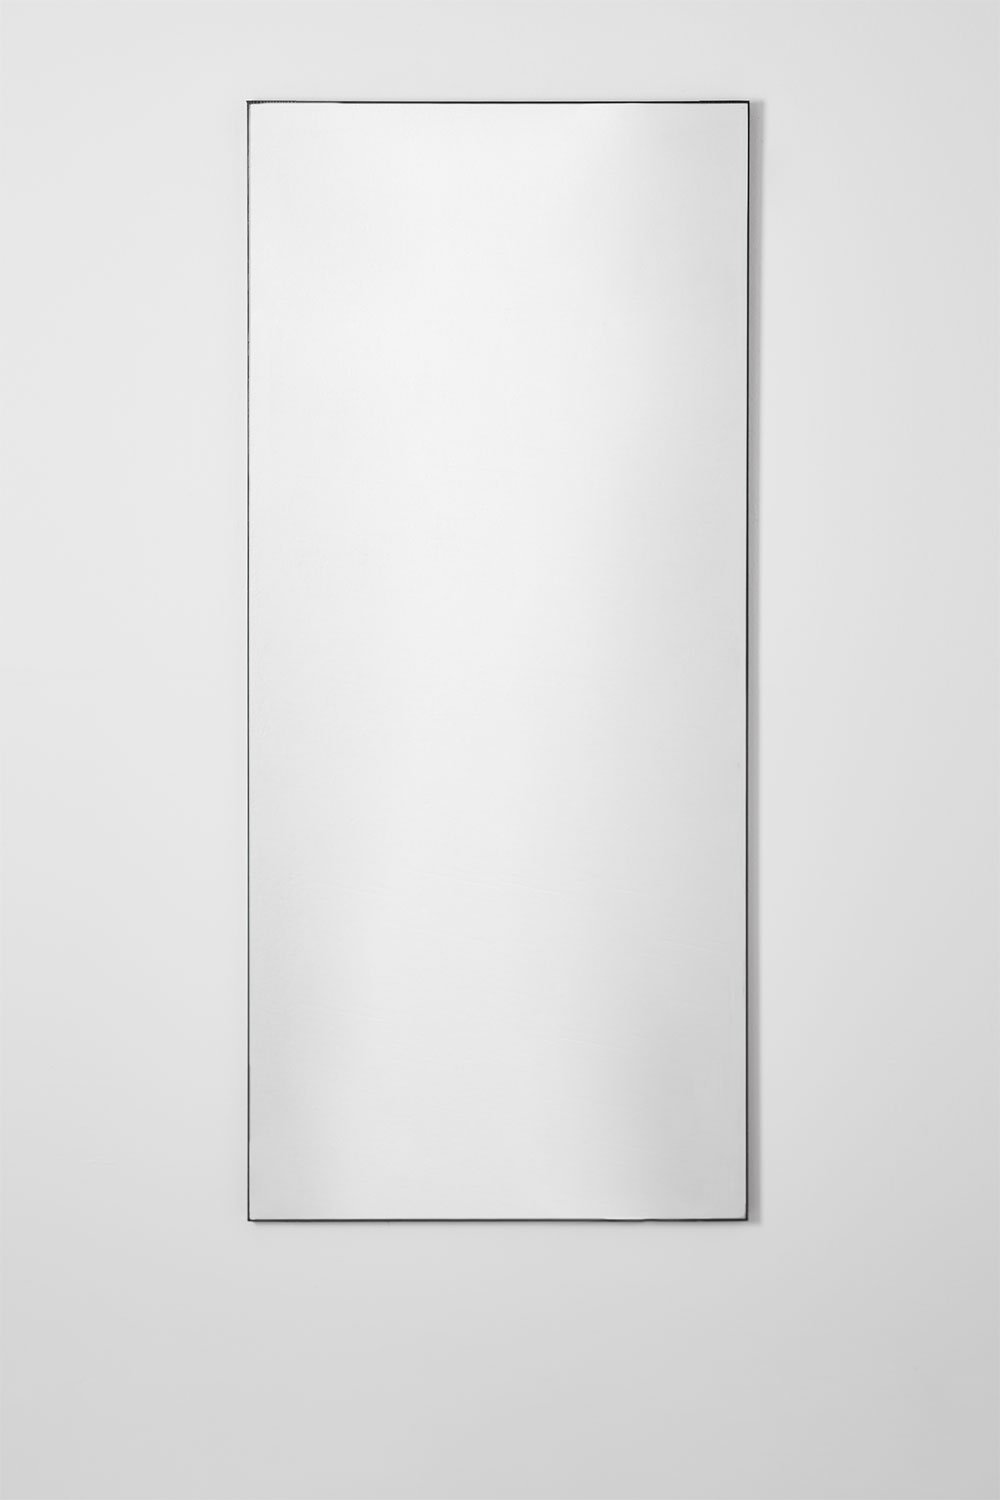 Miroir mural rectangulaire en MDF (60x140 cm) Vuaret, image de la galerie 1